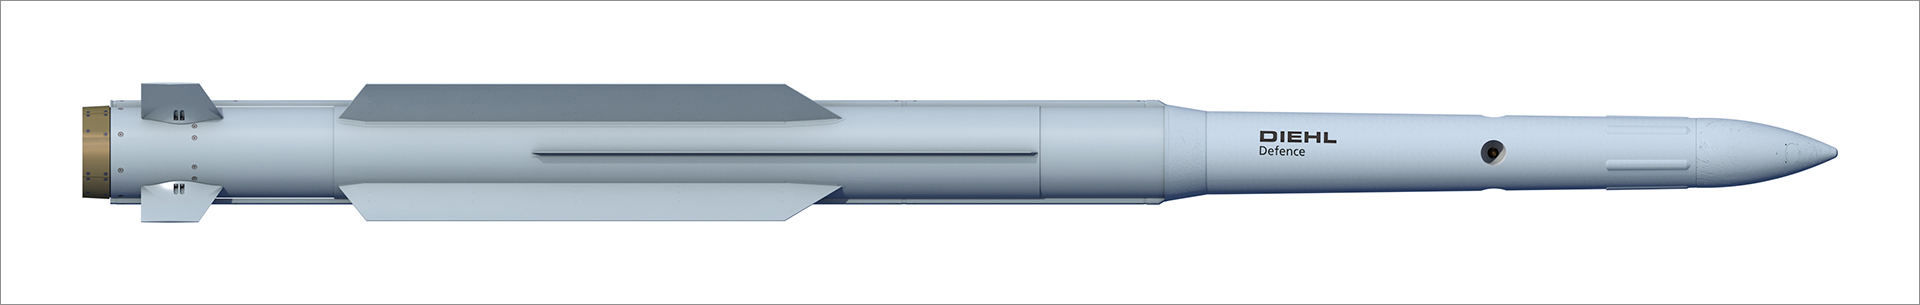 20230414_3-IRIS-T-HYDEF-Entwurf-zweistufiger-Interceptor.jpg